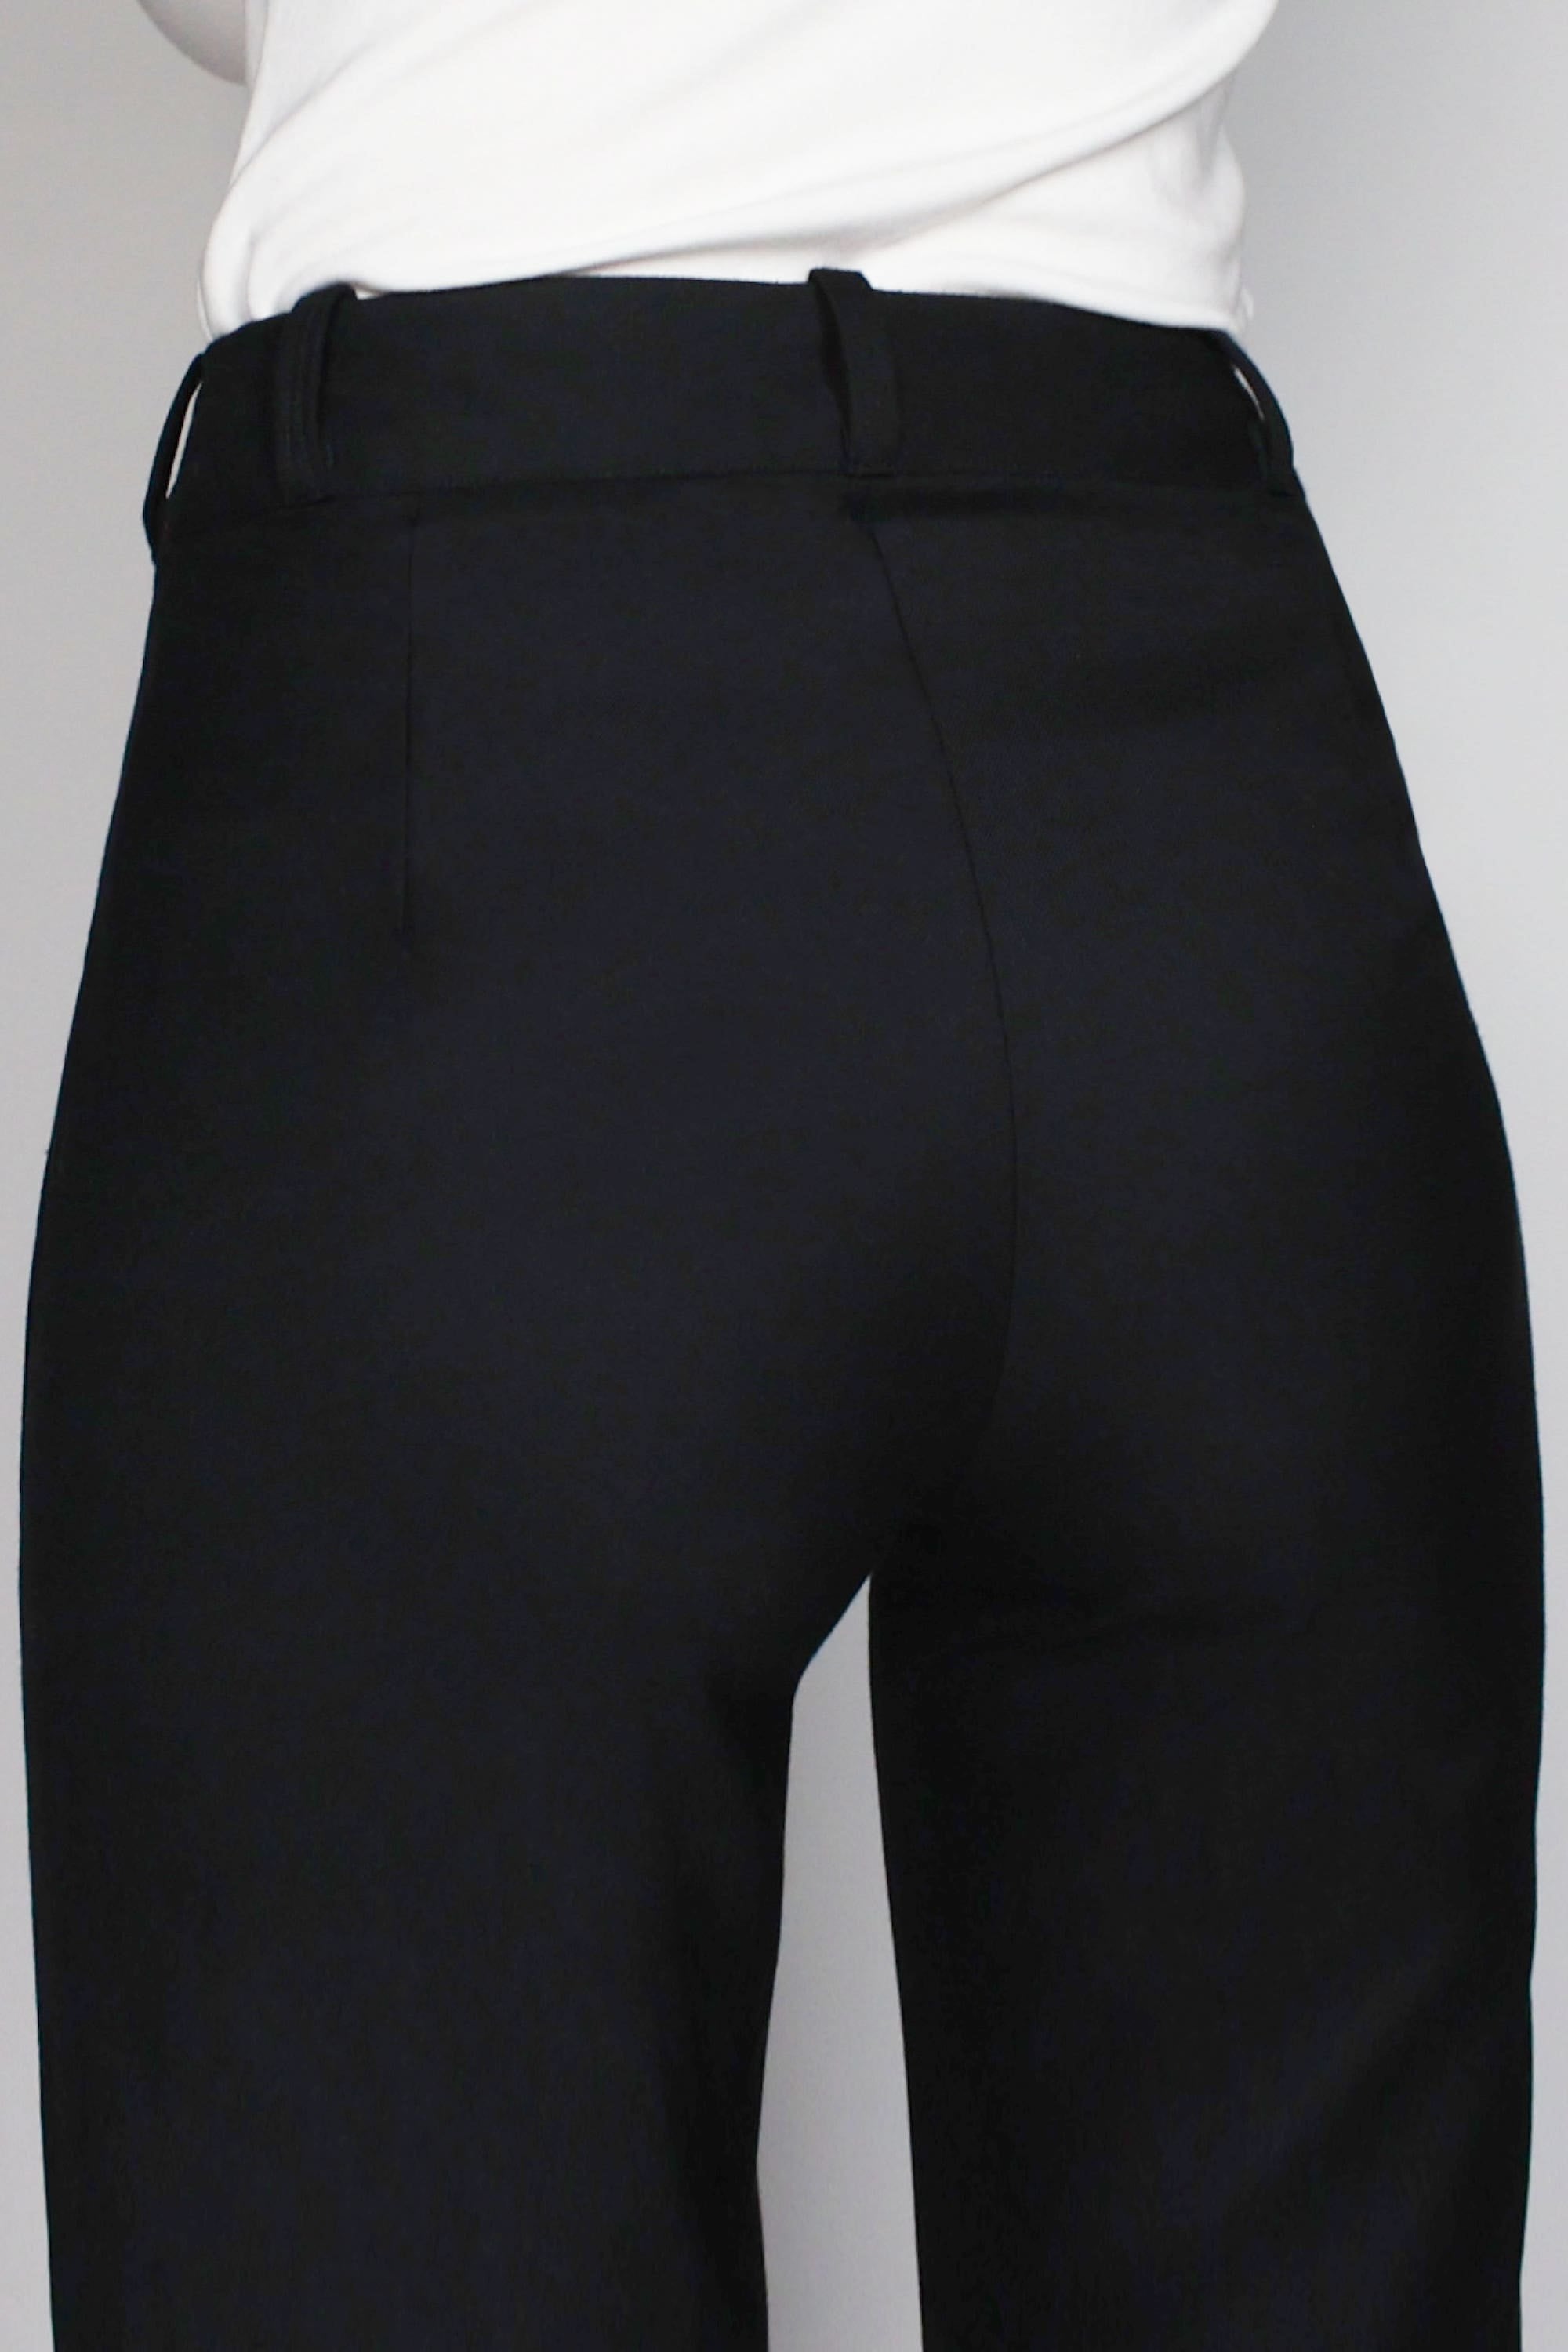 Black Formal Pants for Women, Black High Waist Pants for Women, Black Pants  High Rise, Black Office Pants for Women -  Israel